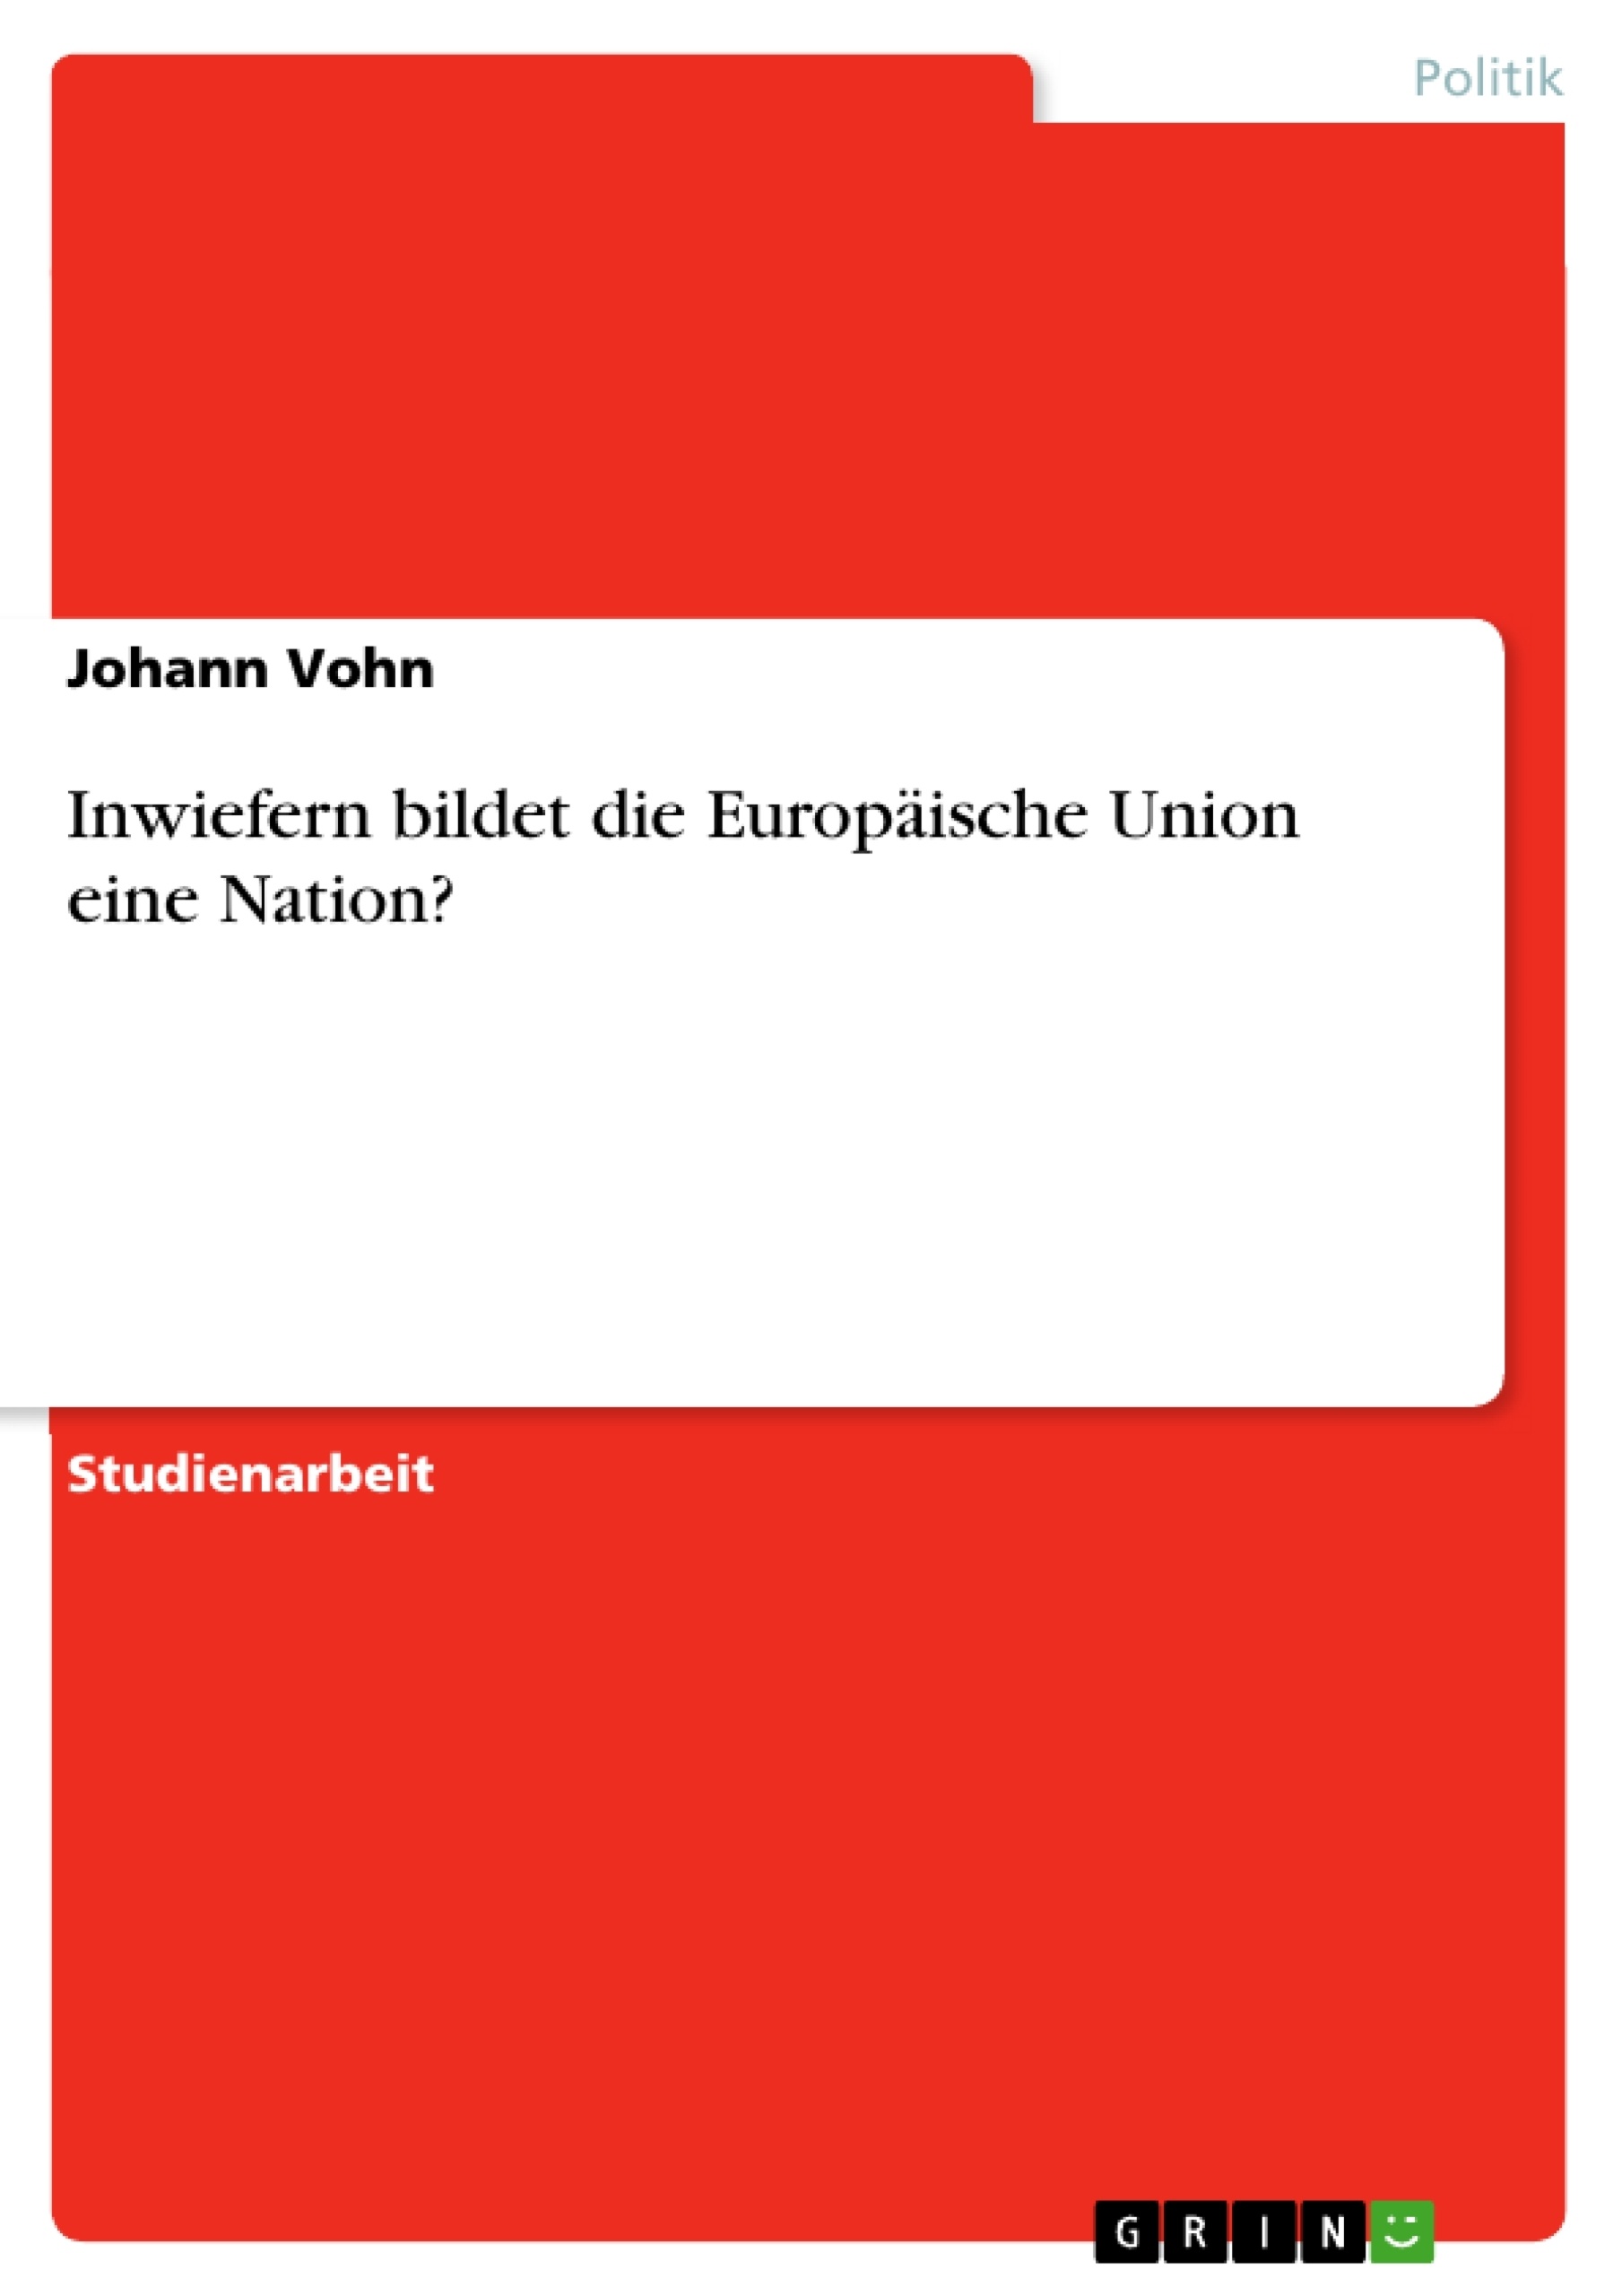 Title: Inwiefern bildet die Europäische Union eine Nation?